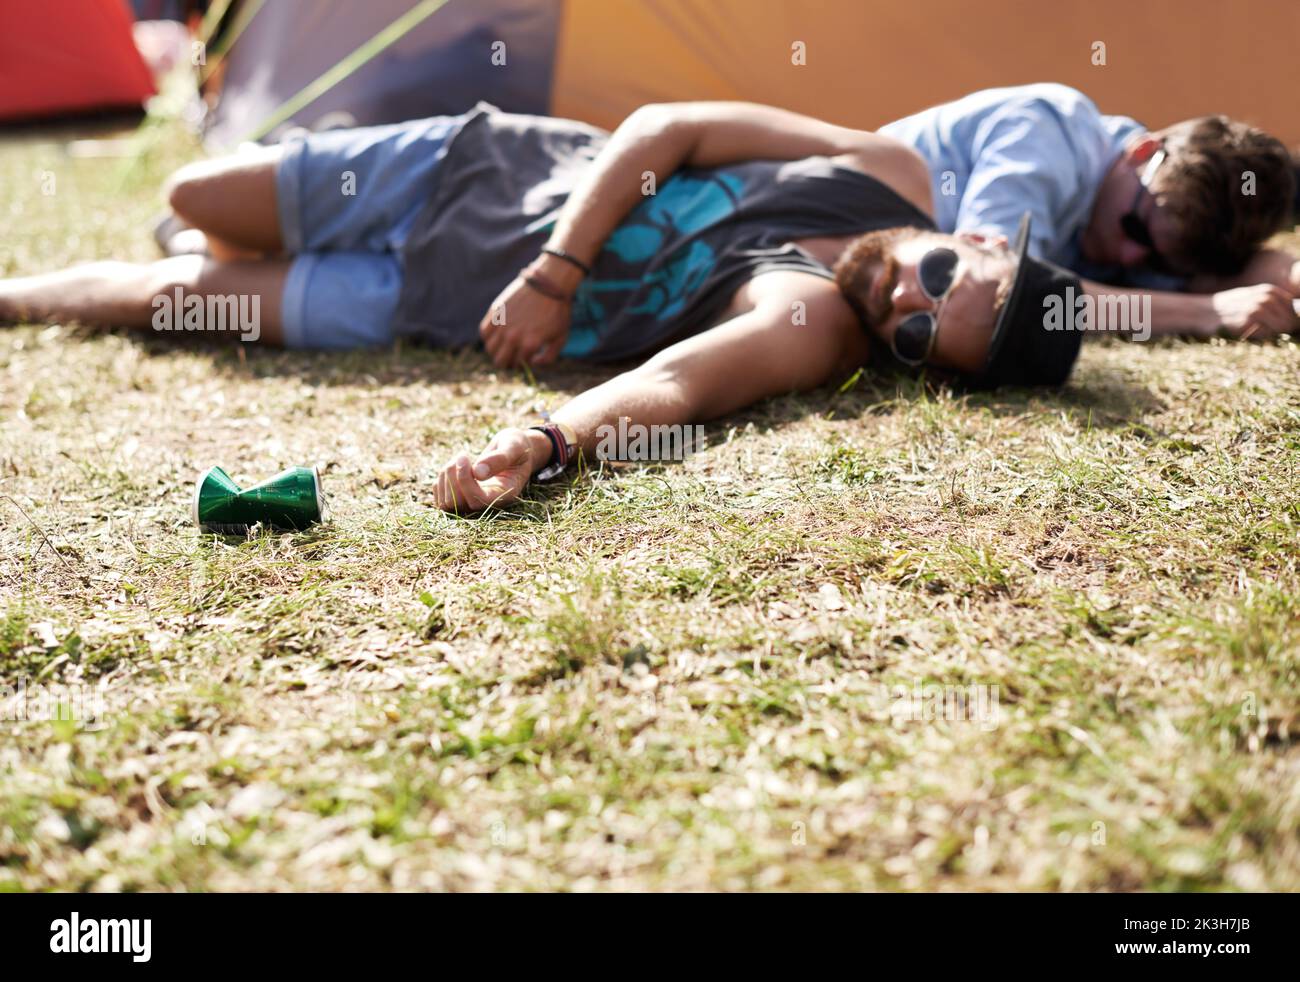 Je ne suis pas tombé le sol avait juste besoin d'un câlin. Deux jeunes hommes qui s'étaient couché sur l'herbe après avoir trop bu lors d'un festival en plein air. Banque D'Images